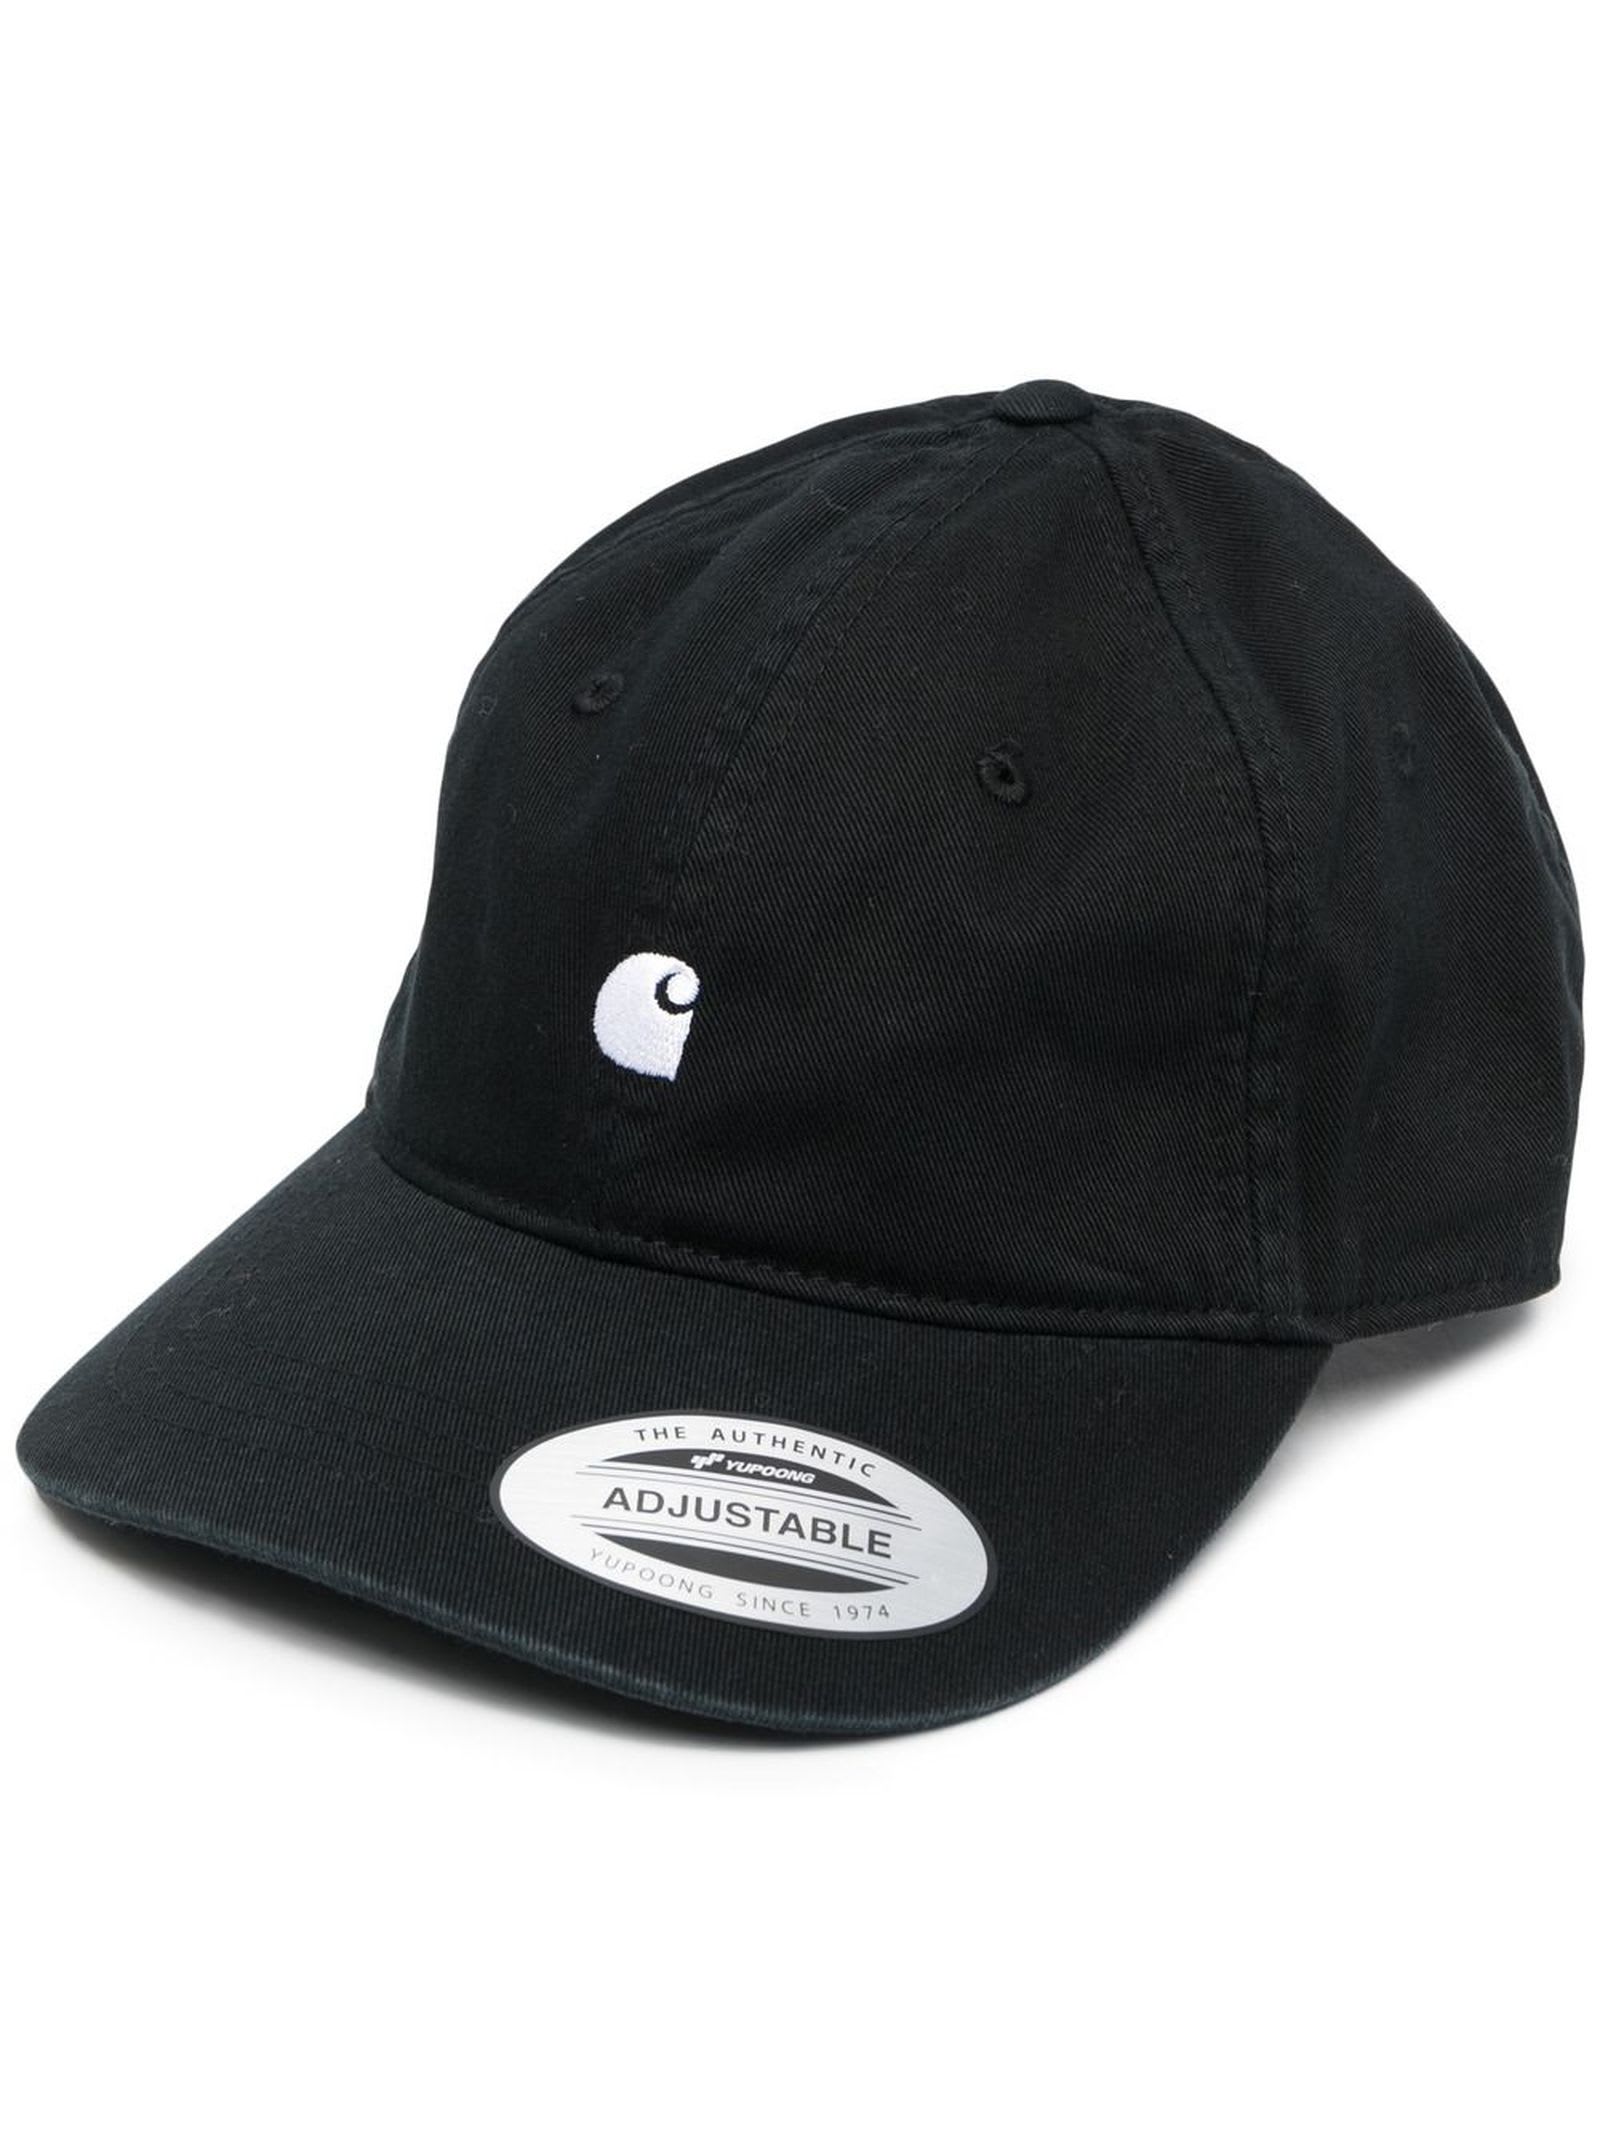 Shop Carhartt Hats Black